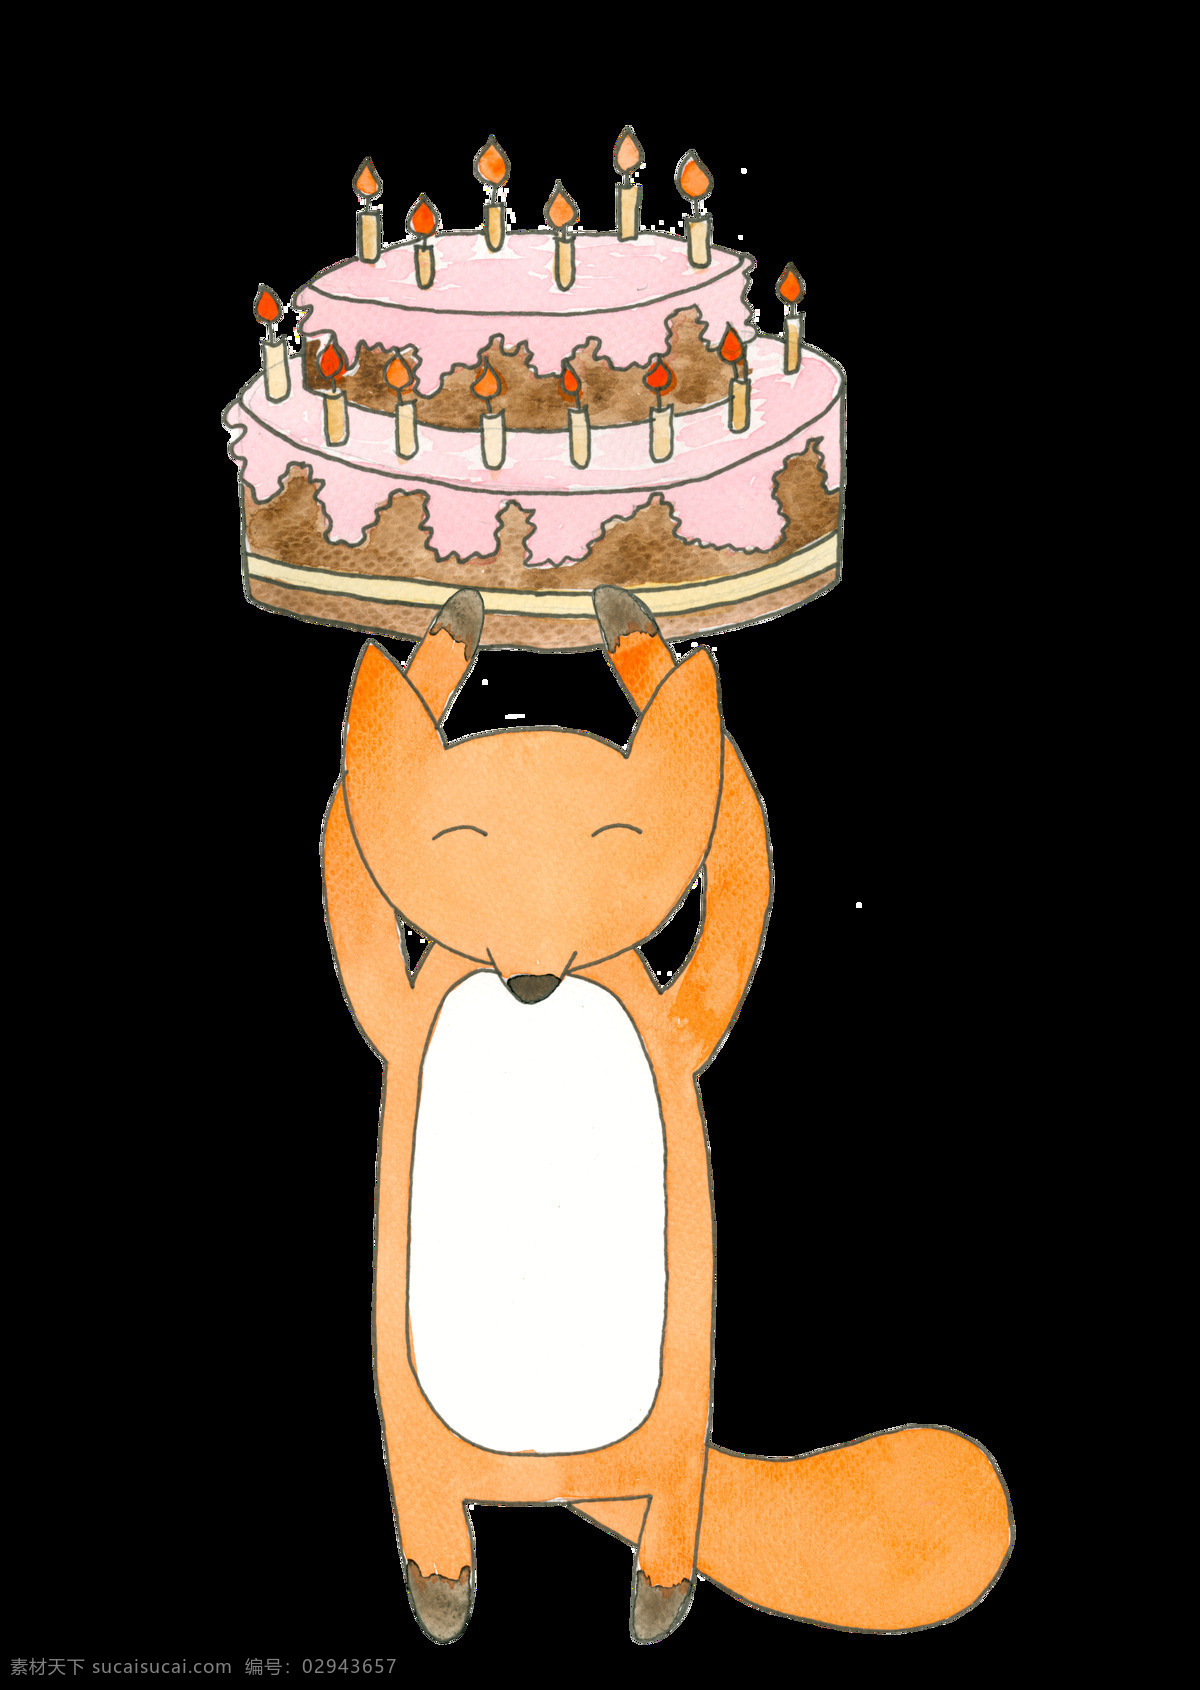 卡通 狐狸 透明 手绘 橙色 蛋糕 矢量素材 设计素材